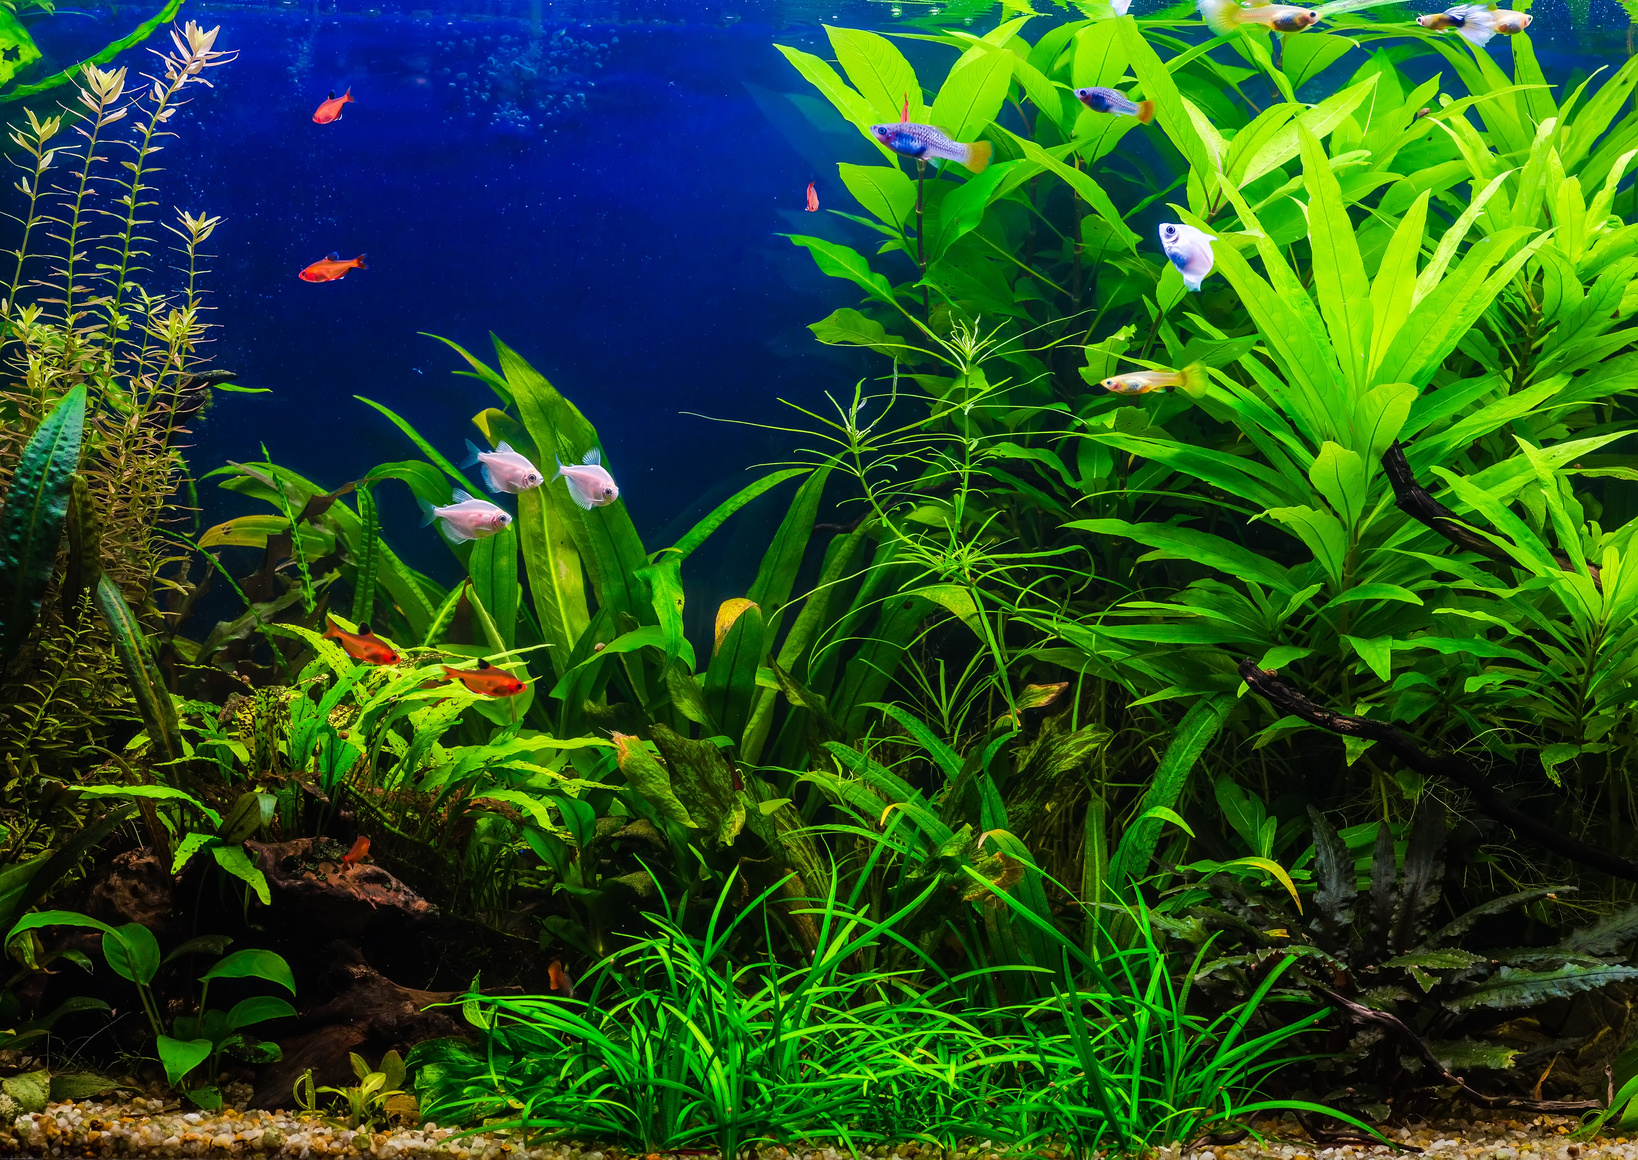 Quelles plantes choisir pour son aquarium d'eau douce ?&nbsp;Les poissons aiment beaucoup, par exemple, se cacher&nbsp;derrière les grandes feuilles de l'Anubia naine, une plante qui demande peu de soins.&nbsp;© bukhta79, fotolia